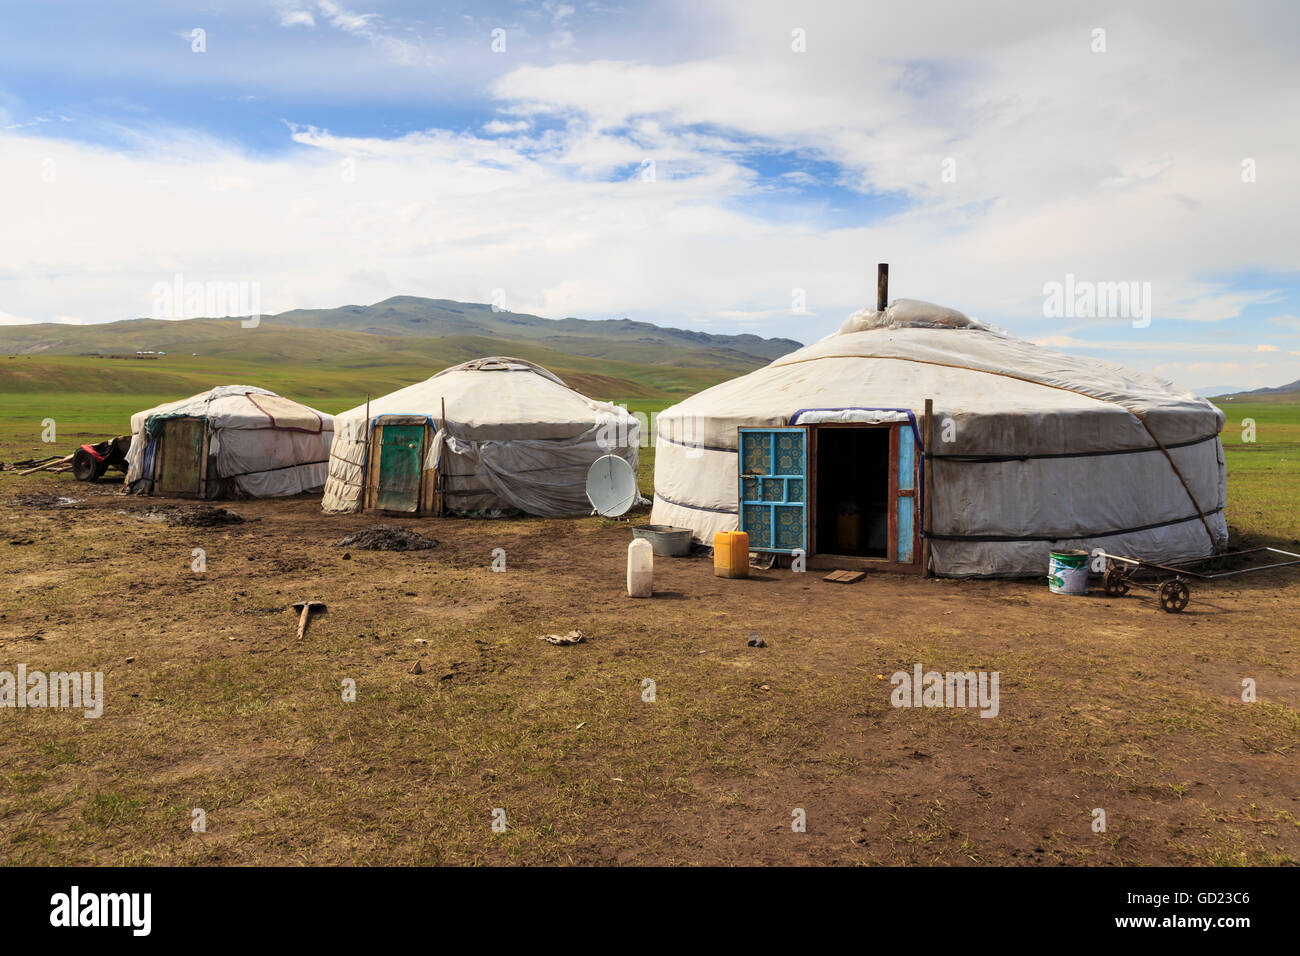 Linie der Familie Gers an einem Sommercamp Nomad, fernen Gers und Berge, Khujirt, Uvurkhangai (Ovorkhangai), zentrale Mongolei Stockfoto